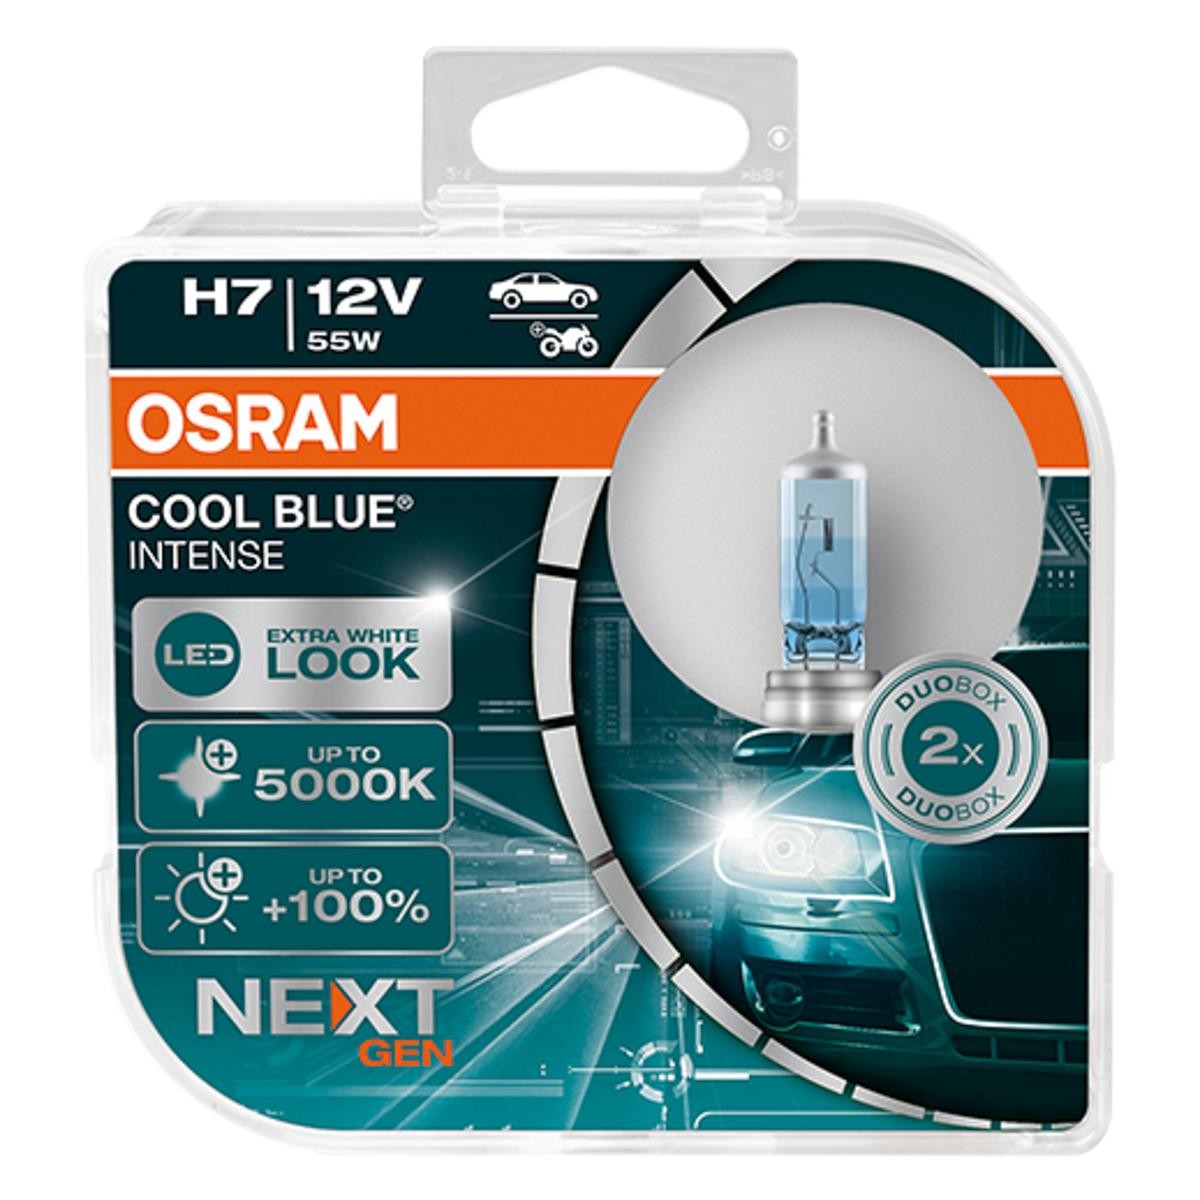 OSRAM H7 ORIGINAL LINE 12V Faltschachtel 64210 günstig online kaufen